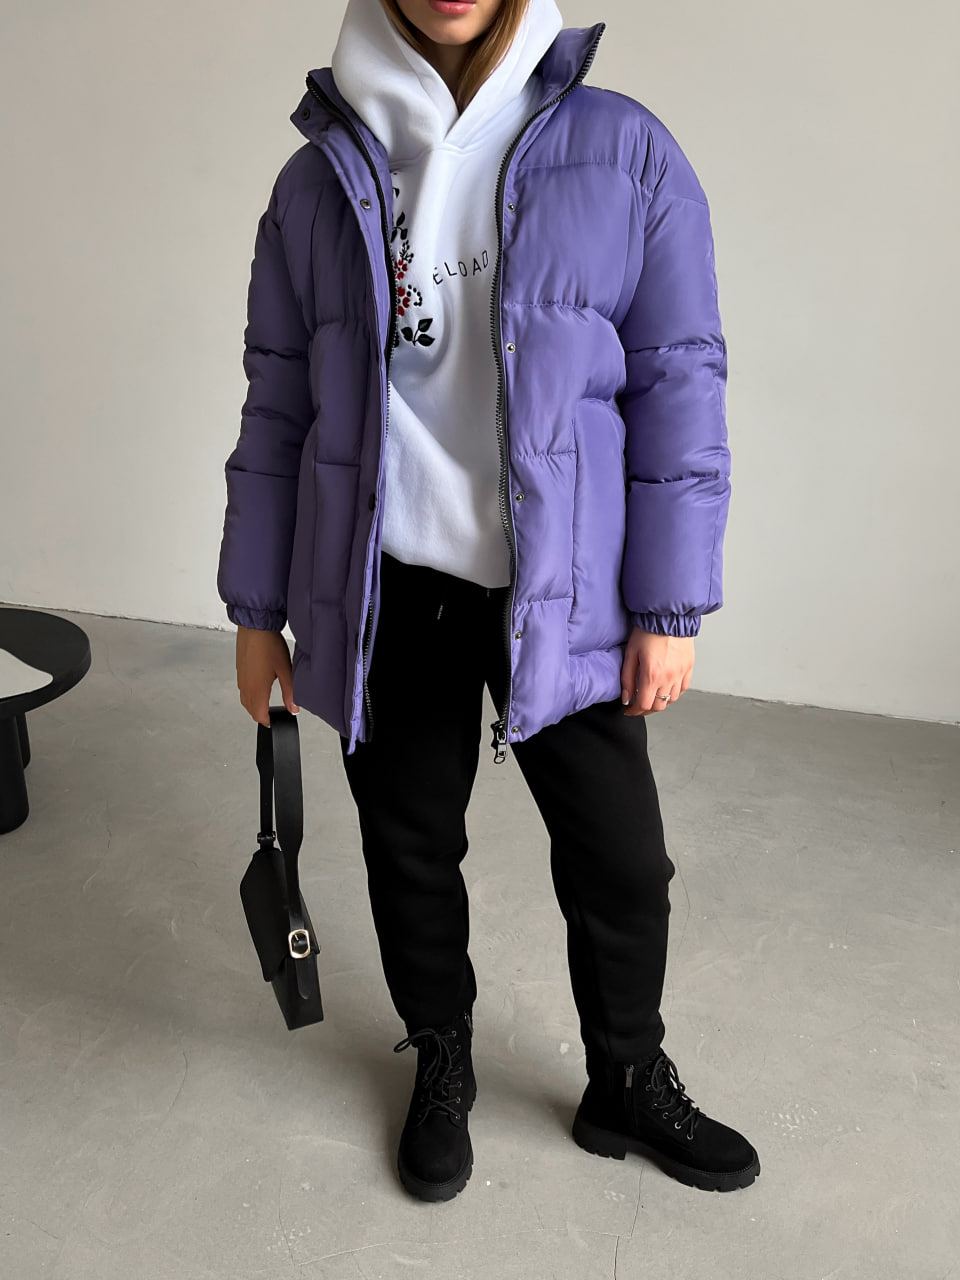 Женская зимняя куртка-пуховик Reload Elly фиолетовая / Зимний короткий пуховик оверсайз стильный теплый - Фото 2